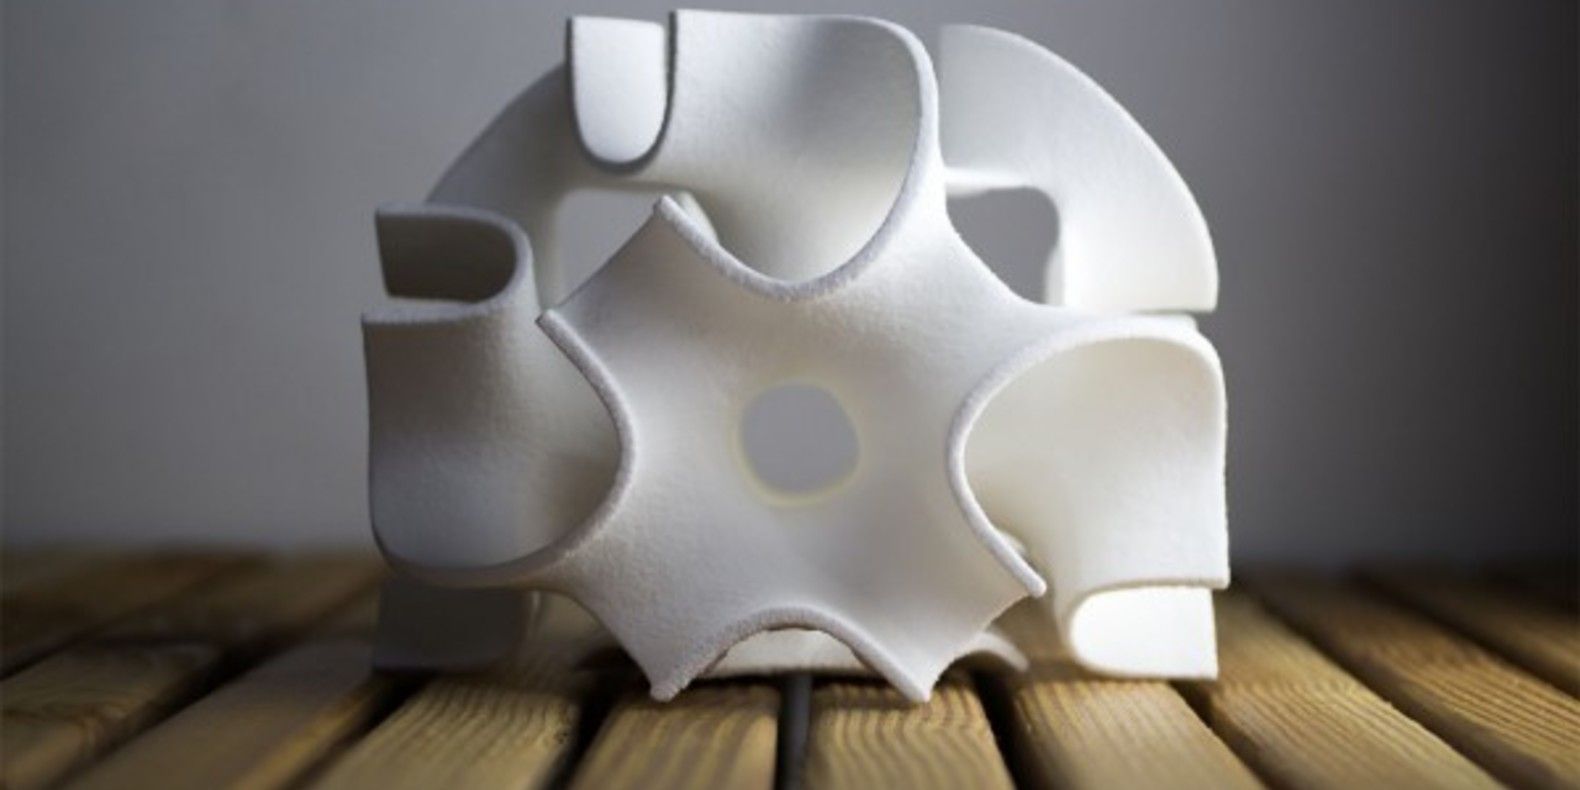 Des sculptures de sucre réalisées en impression 3D